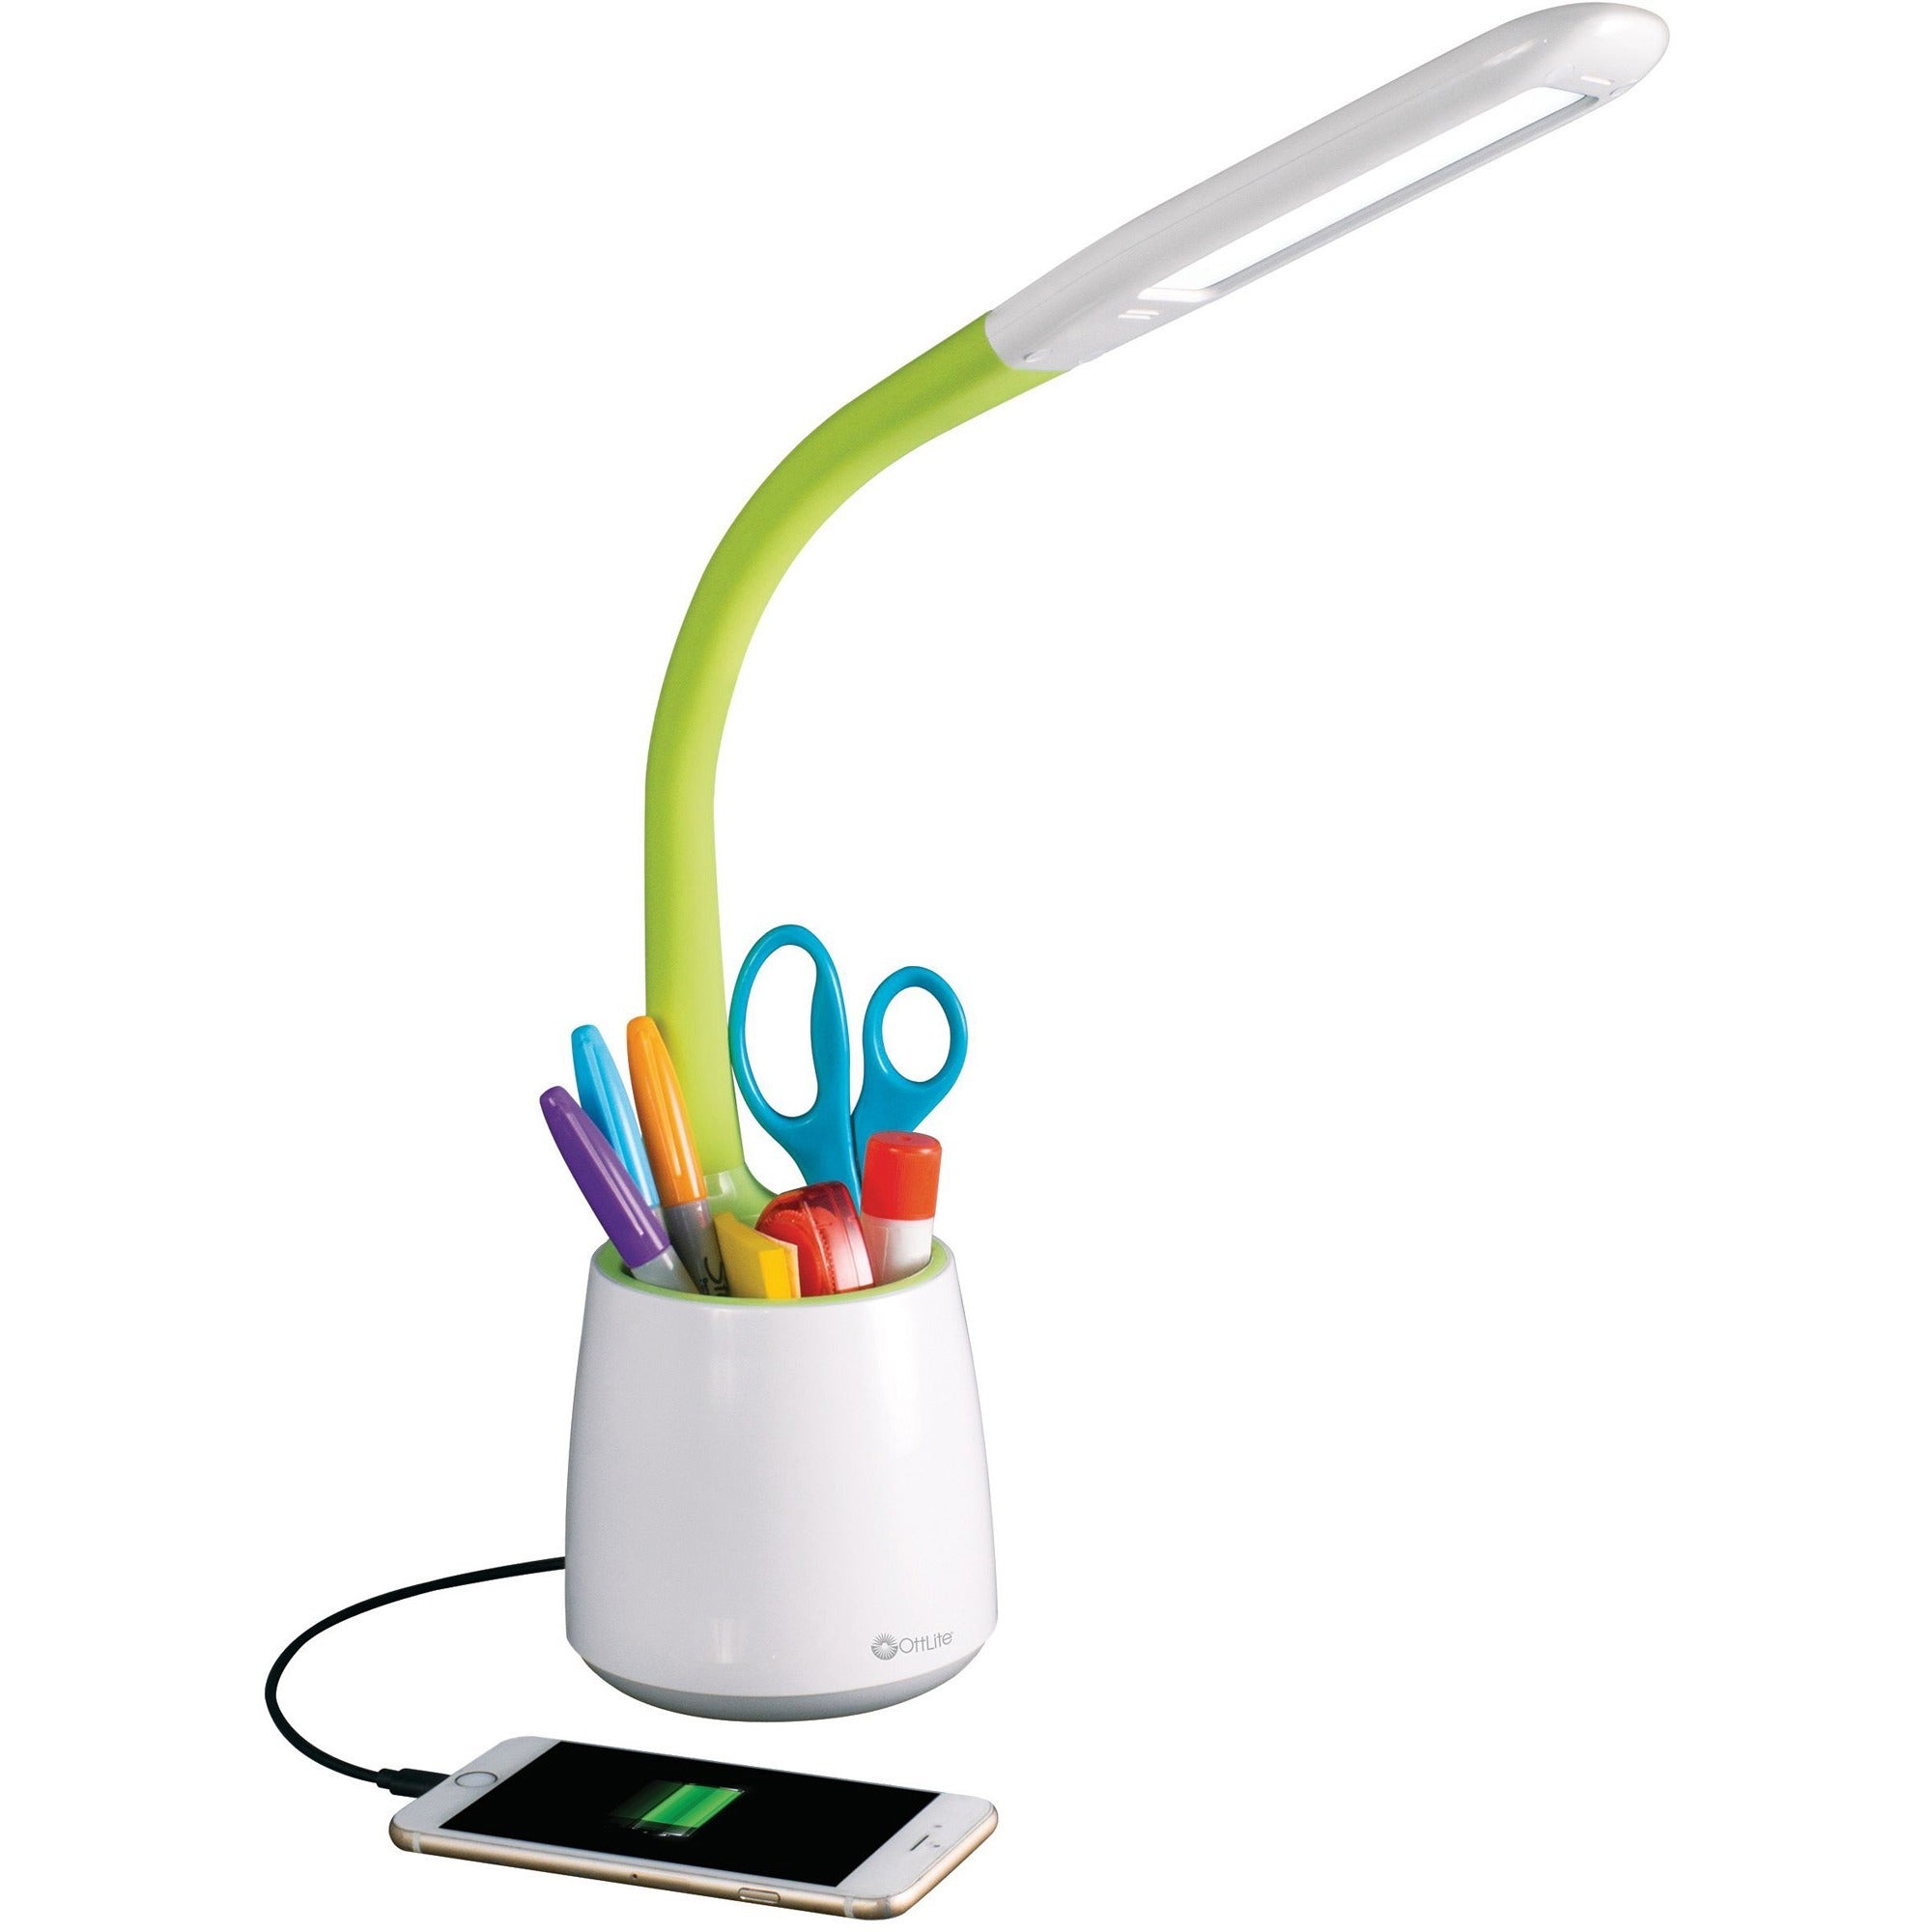 ottlite-desk-lamp-led-white-green-desk-mountable_ottcs59399shpr - 1